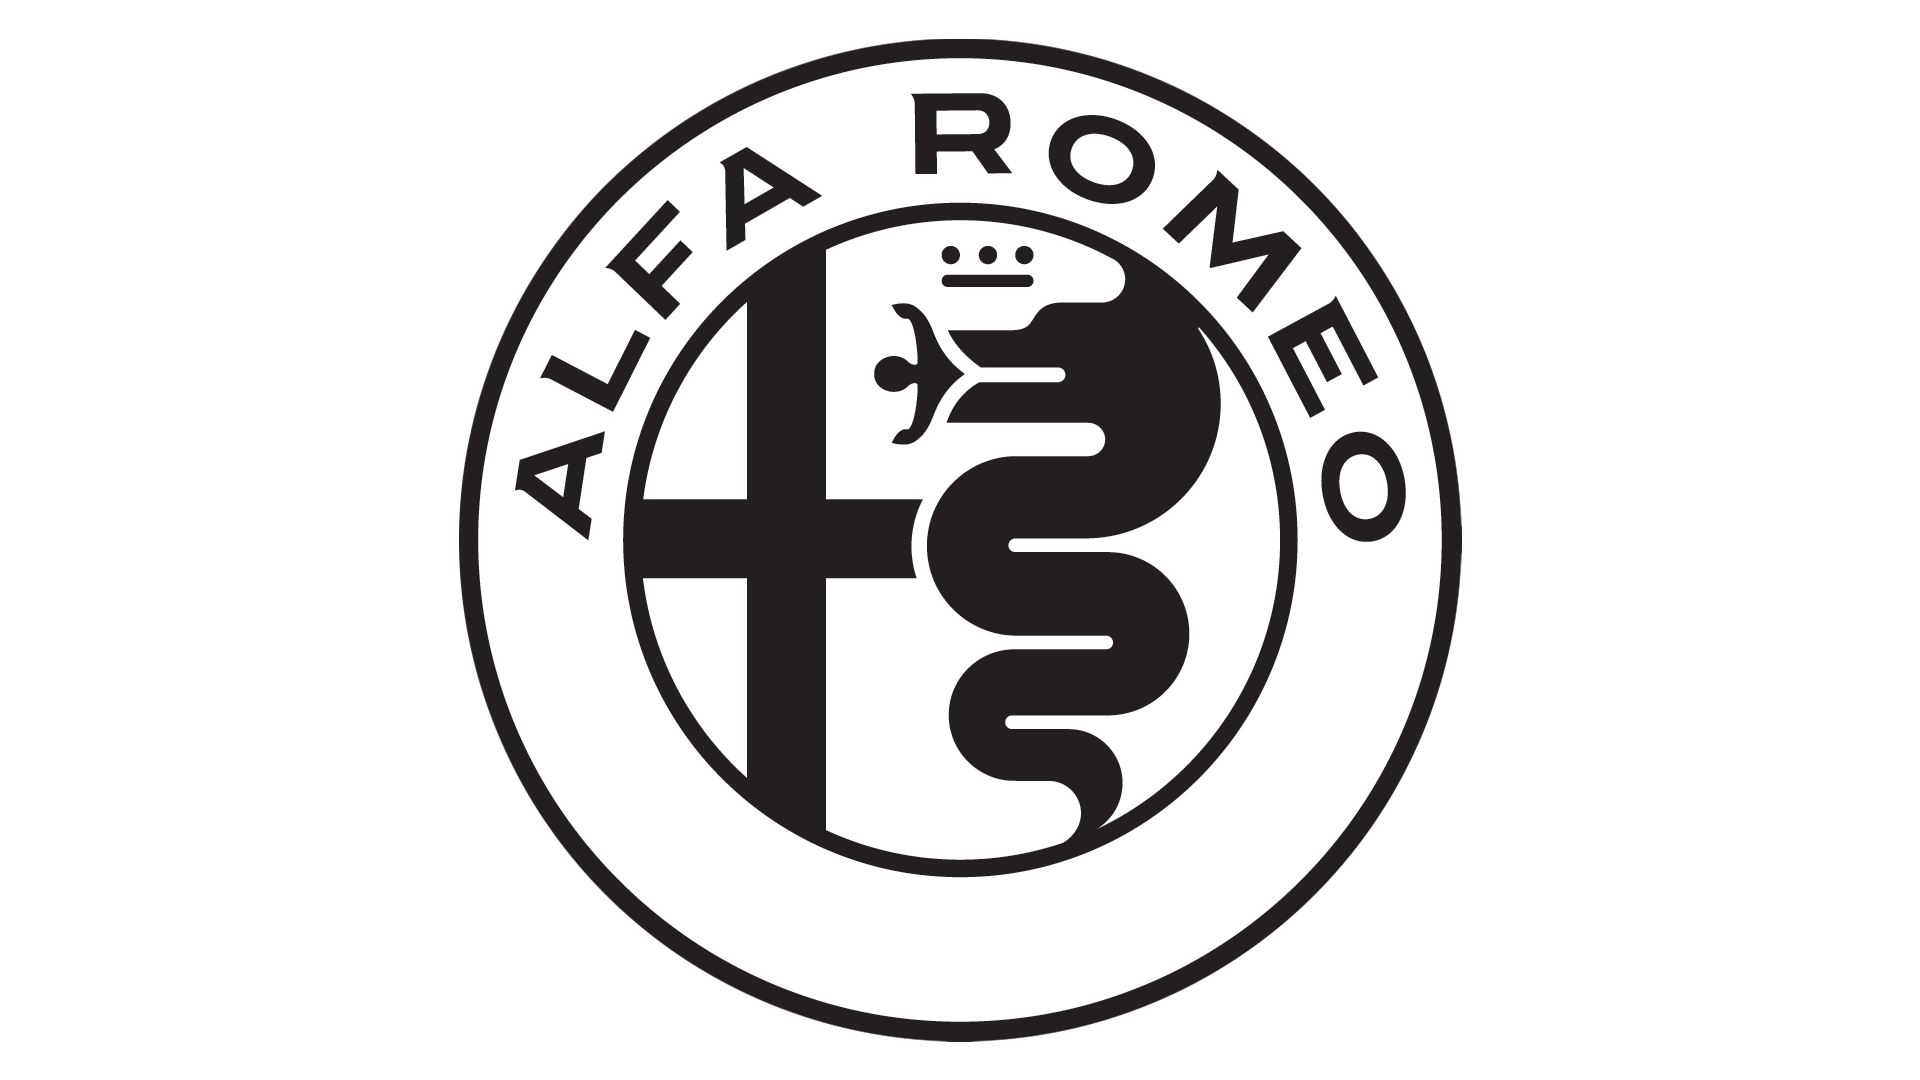 โลโก้ Alfa Romeo ฟรี PNG Image